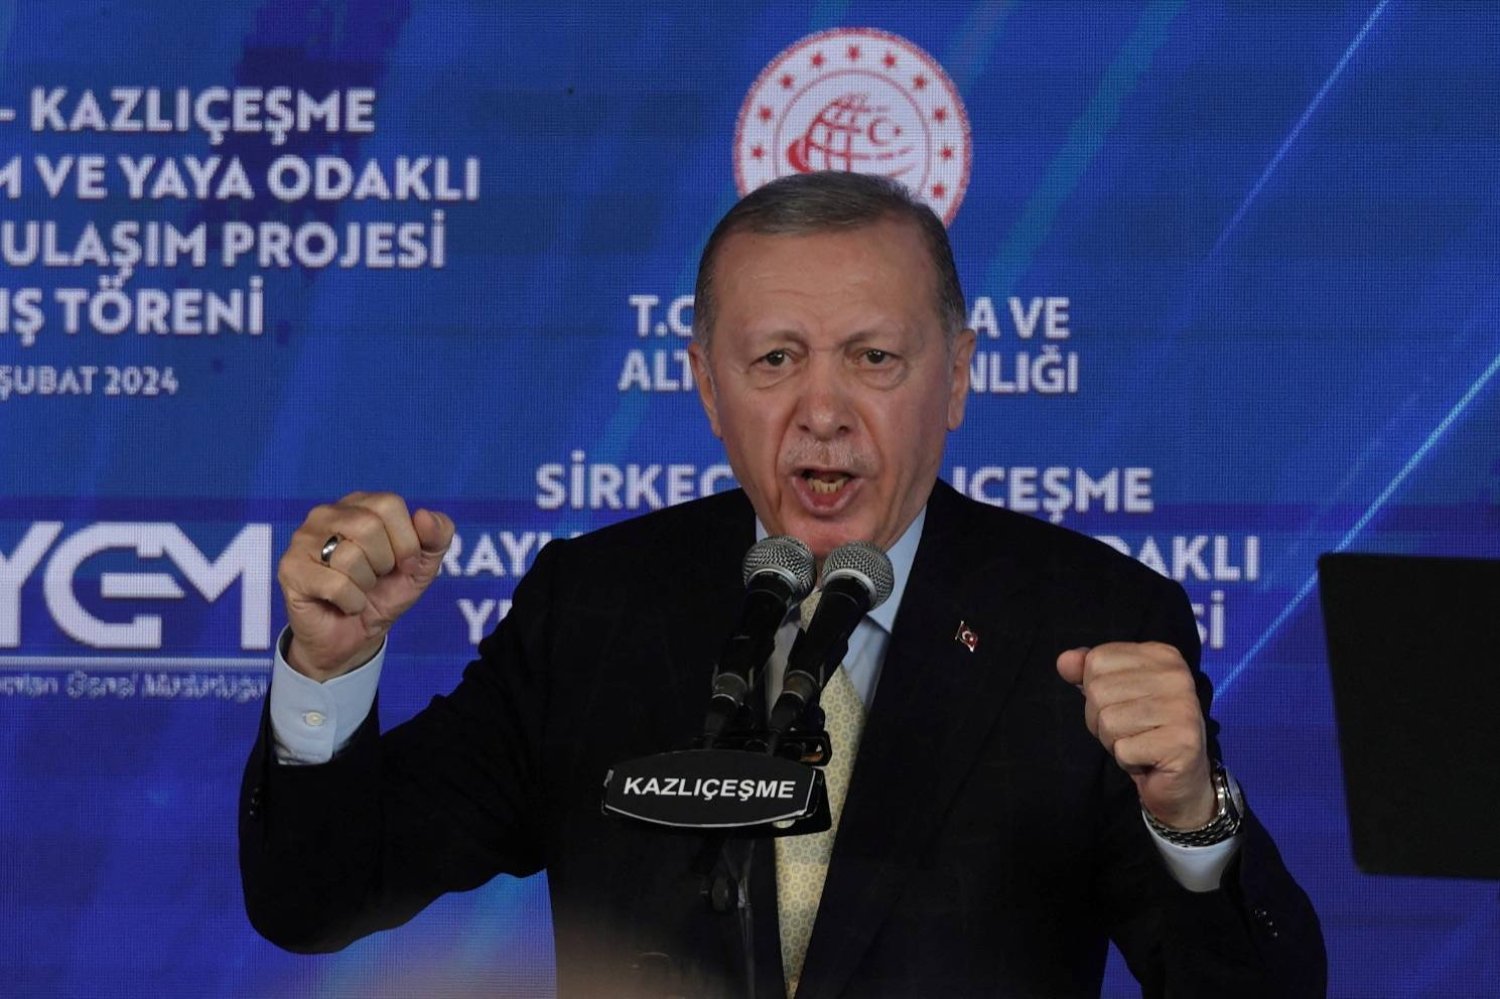 حكومة الرئيس التركي رجب طيب إردوغان دعت إلى محاسبة إسرائيل على انتهاكاتها ضد الفلسطينيين (رويترز)